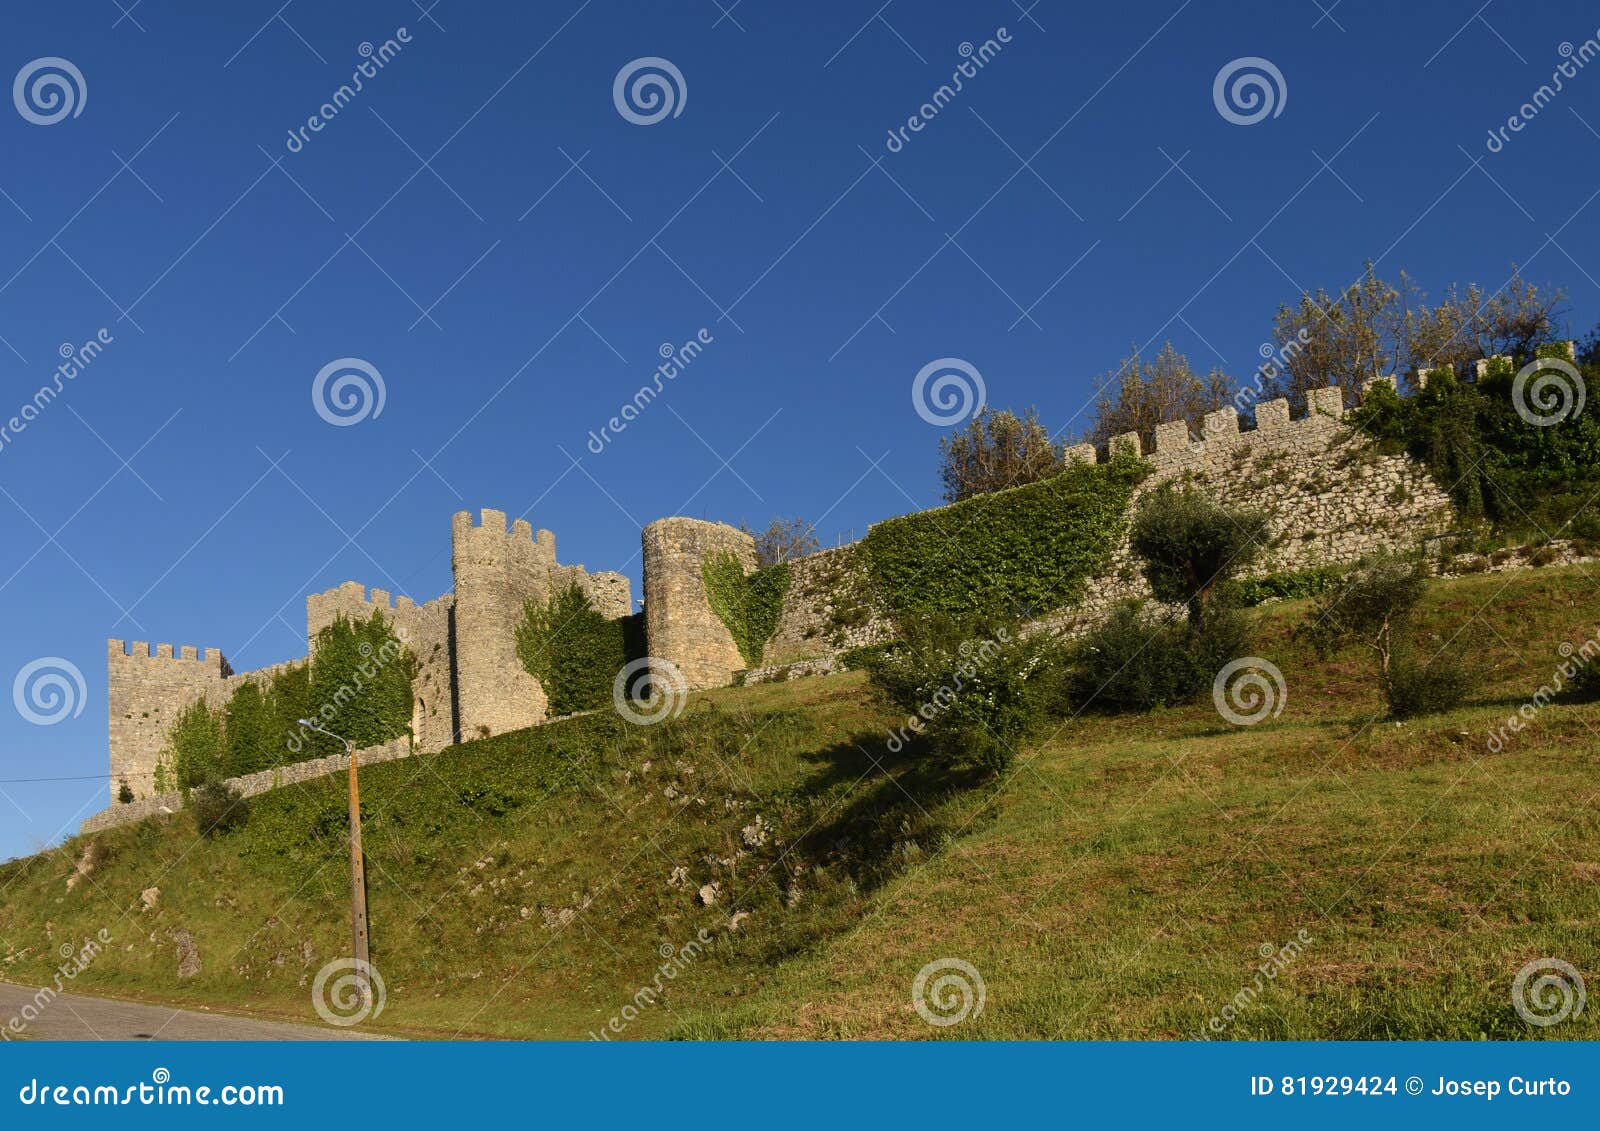 castle of montemor o velho